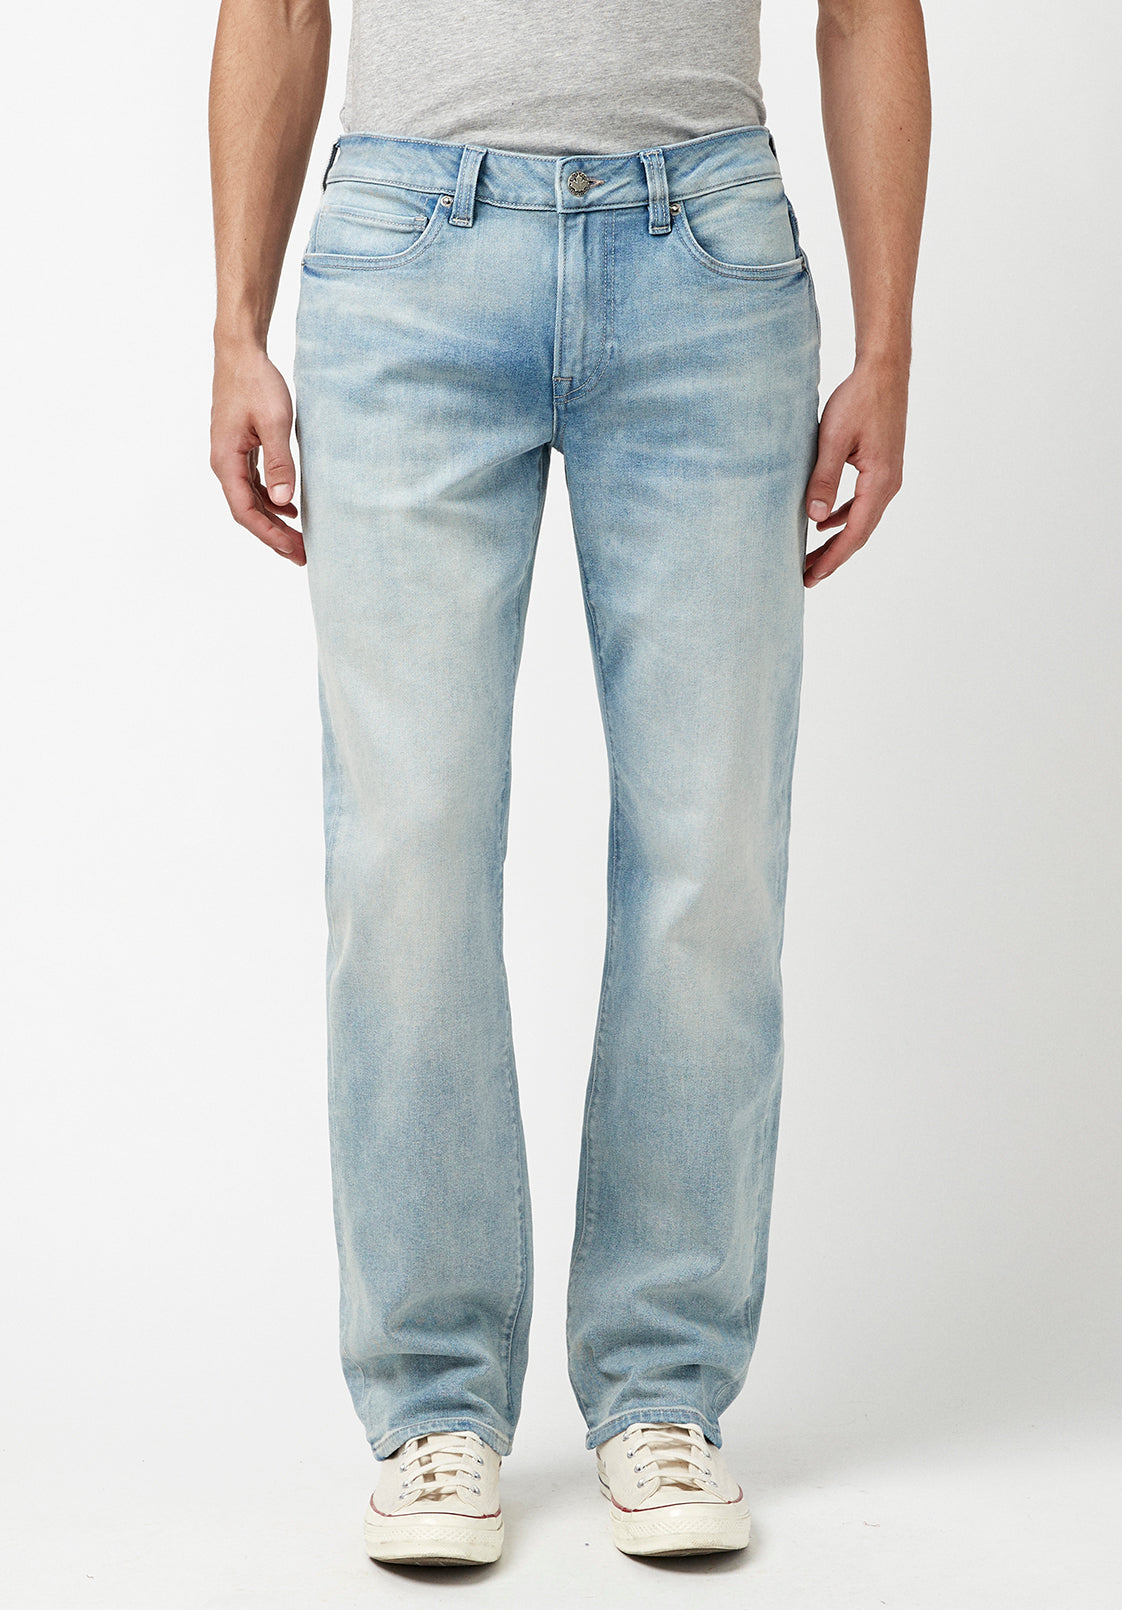 Wiaofellas New Men's Blue Jeans Spring Brand Streetwear Jean